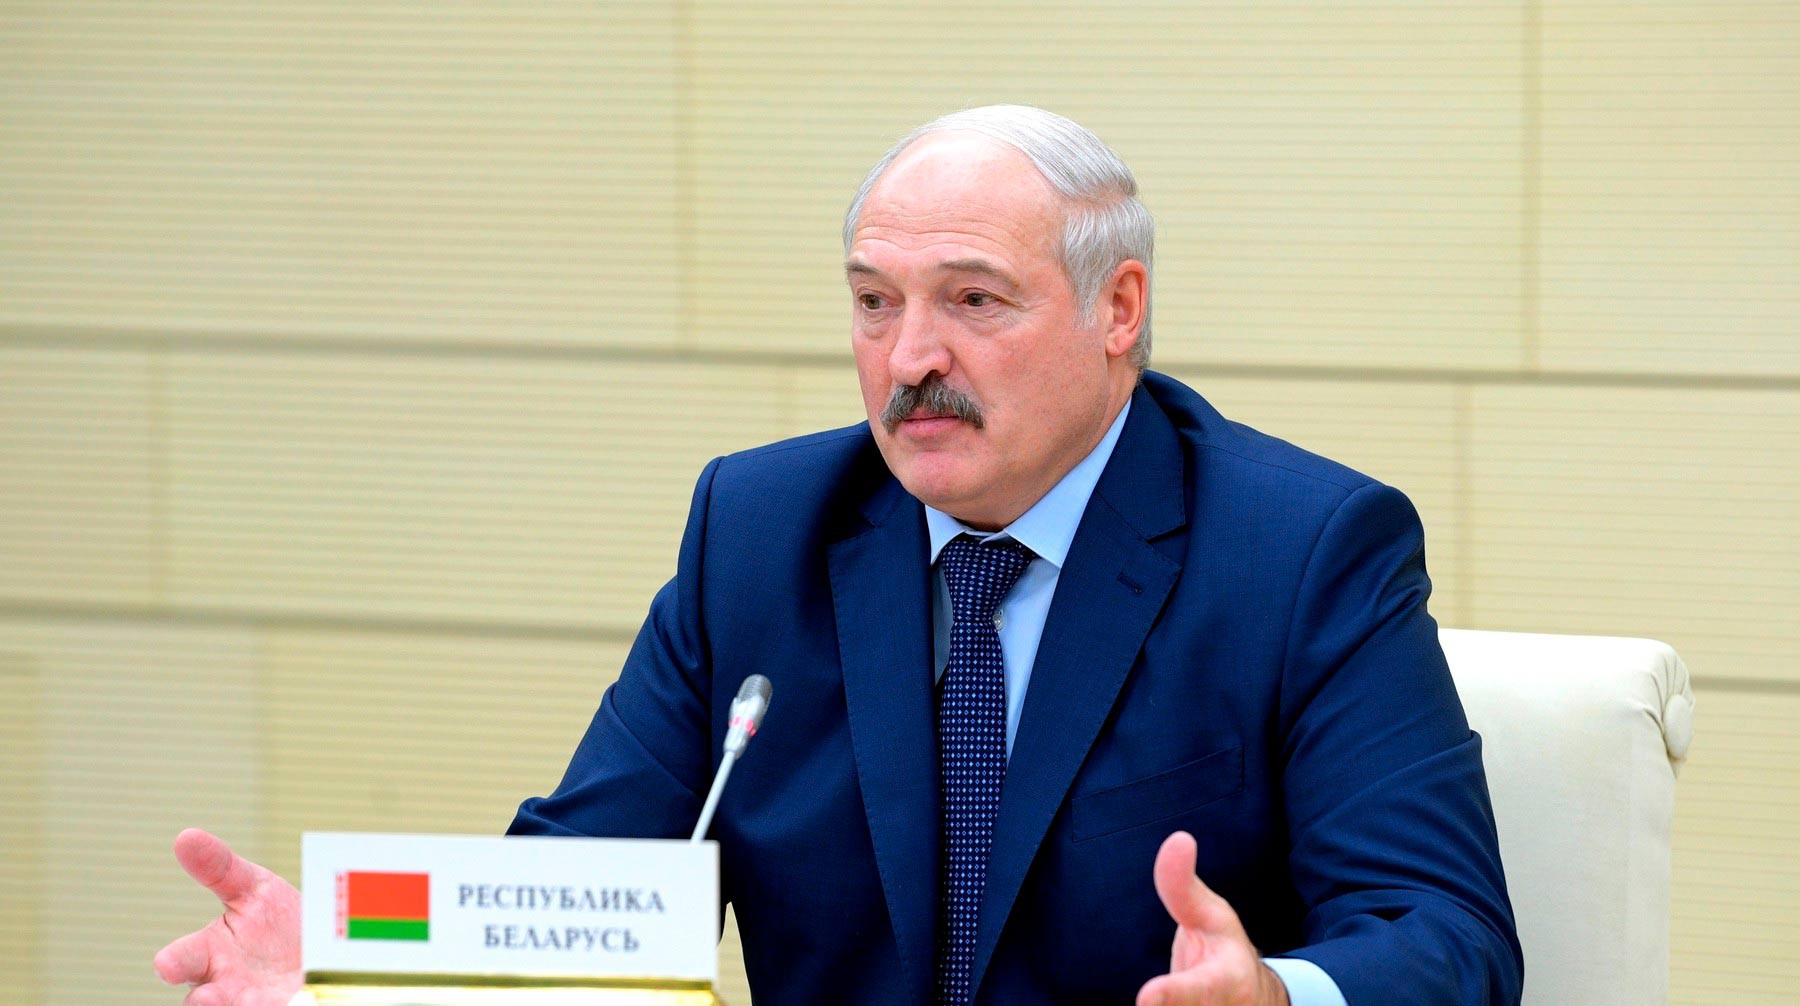 Dailystorm - Лукашенко пожаловался на страны, получившие от Господа нефть